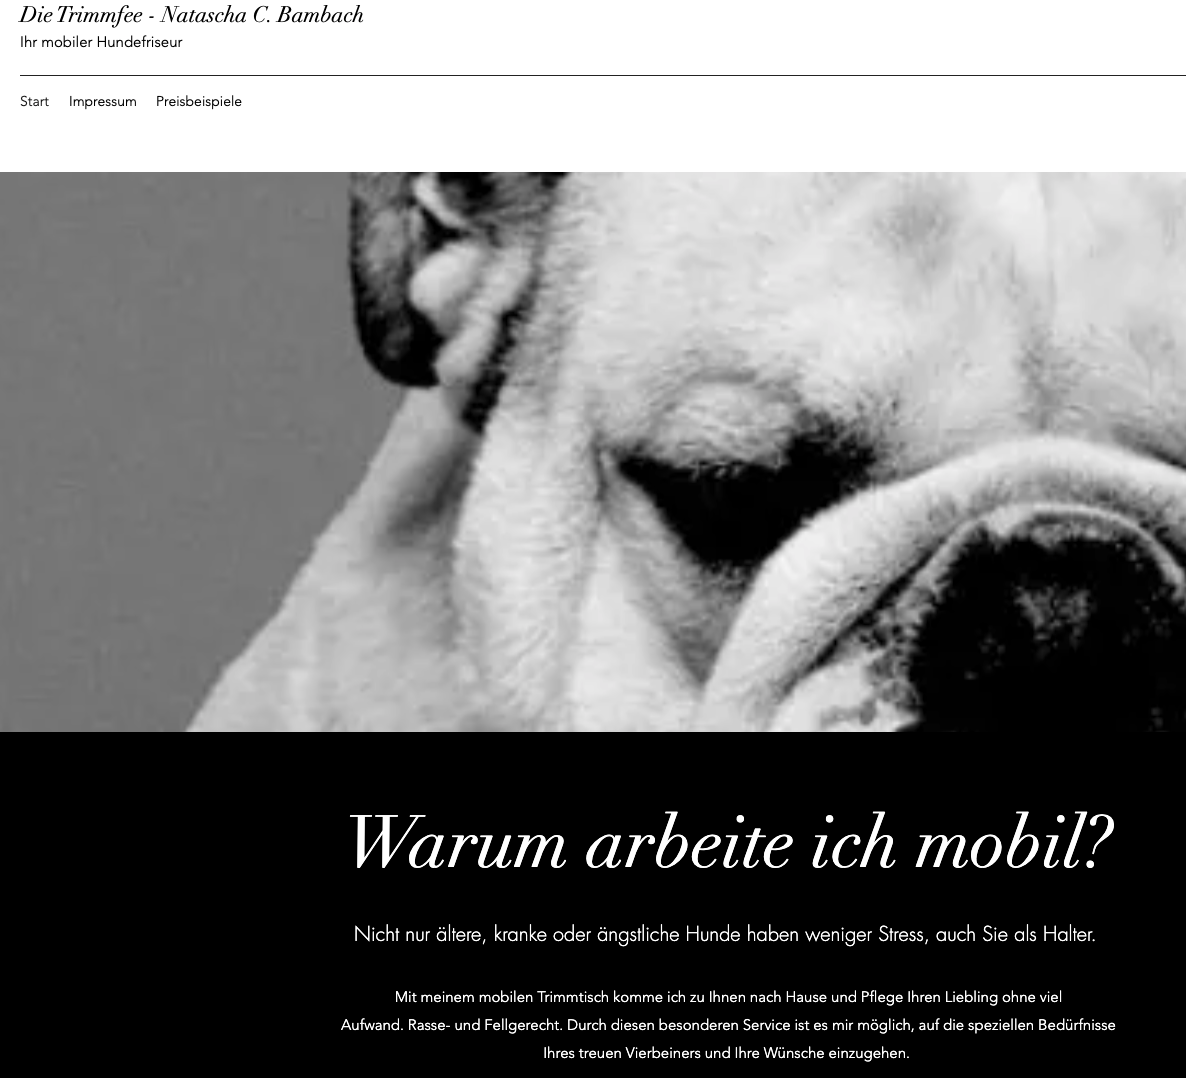 Die Trimmfee der mobile Hundefriseur in Frankfurt